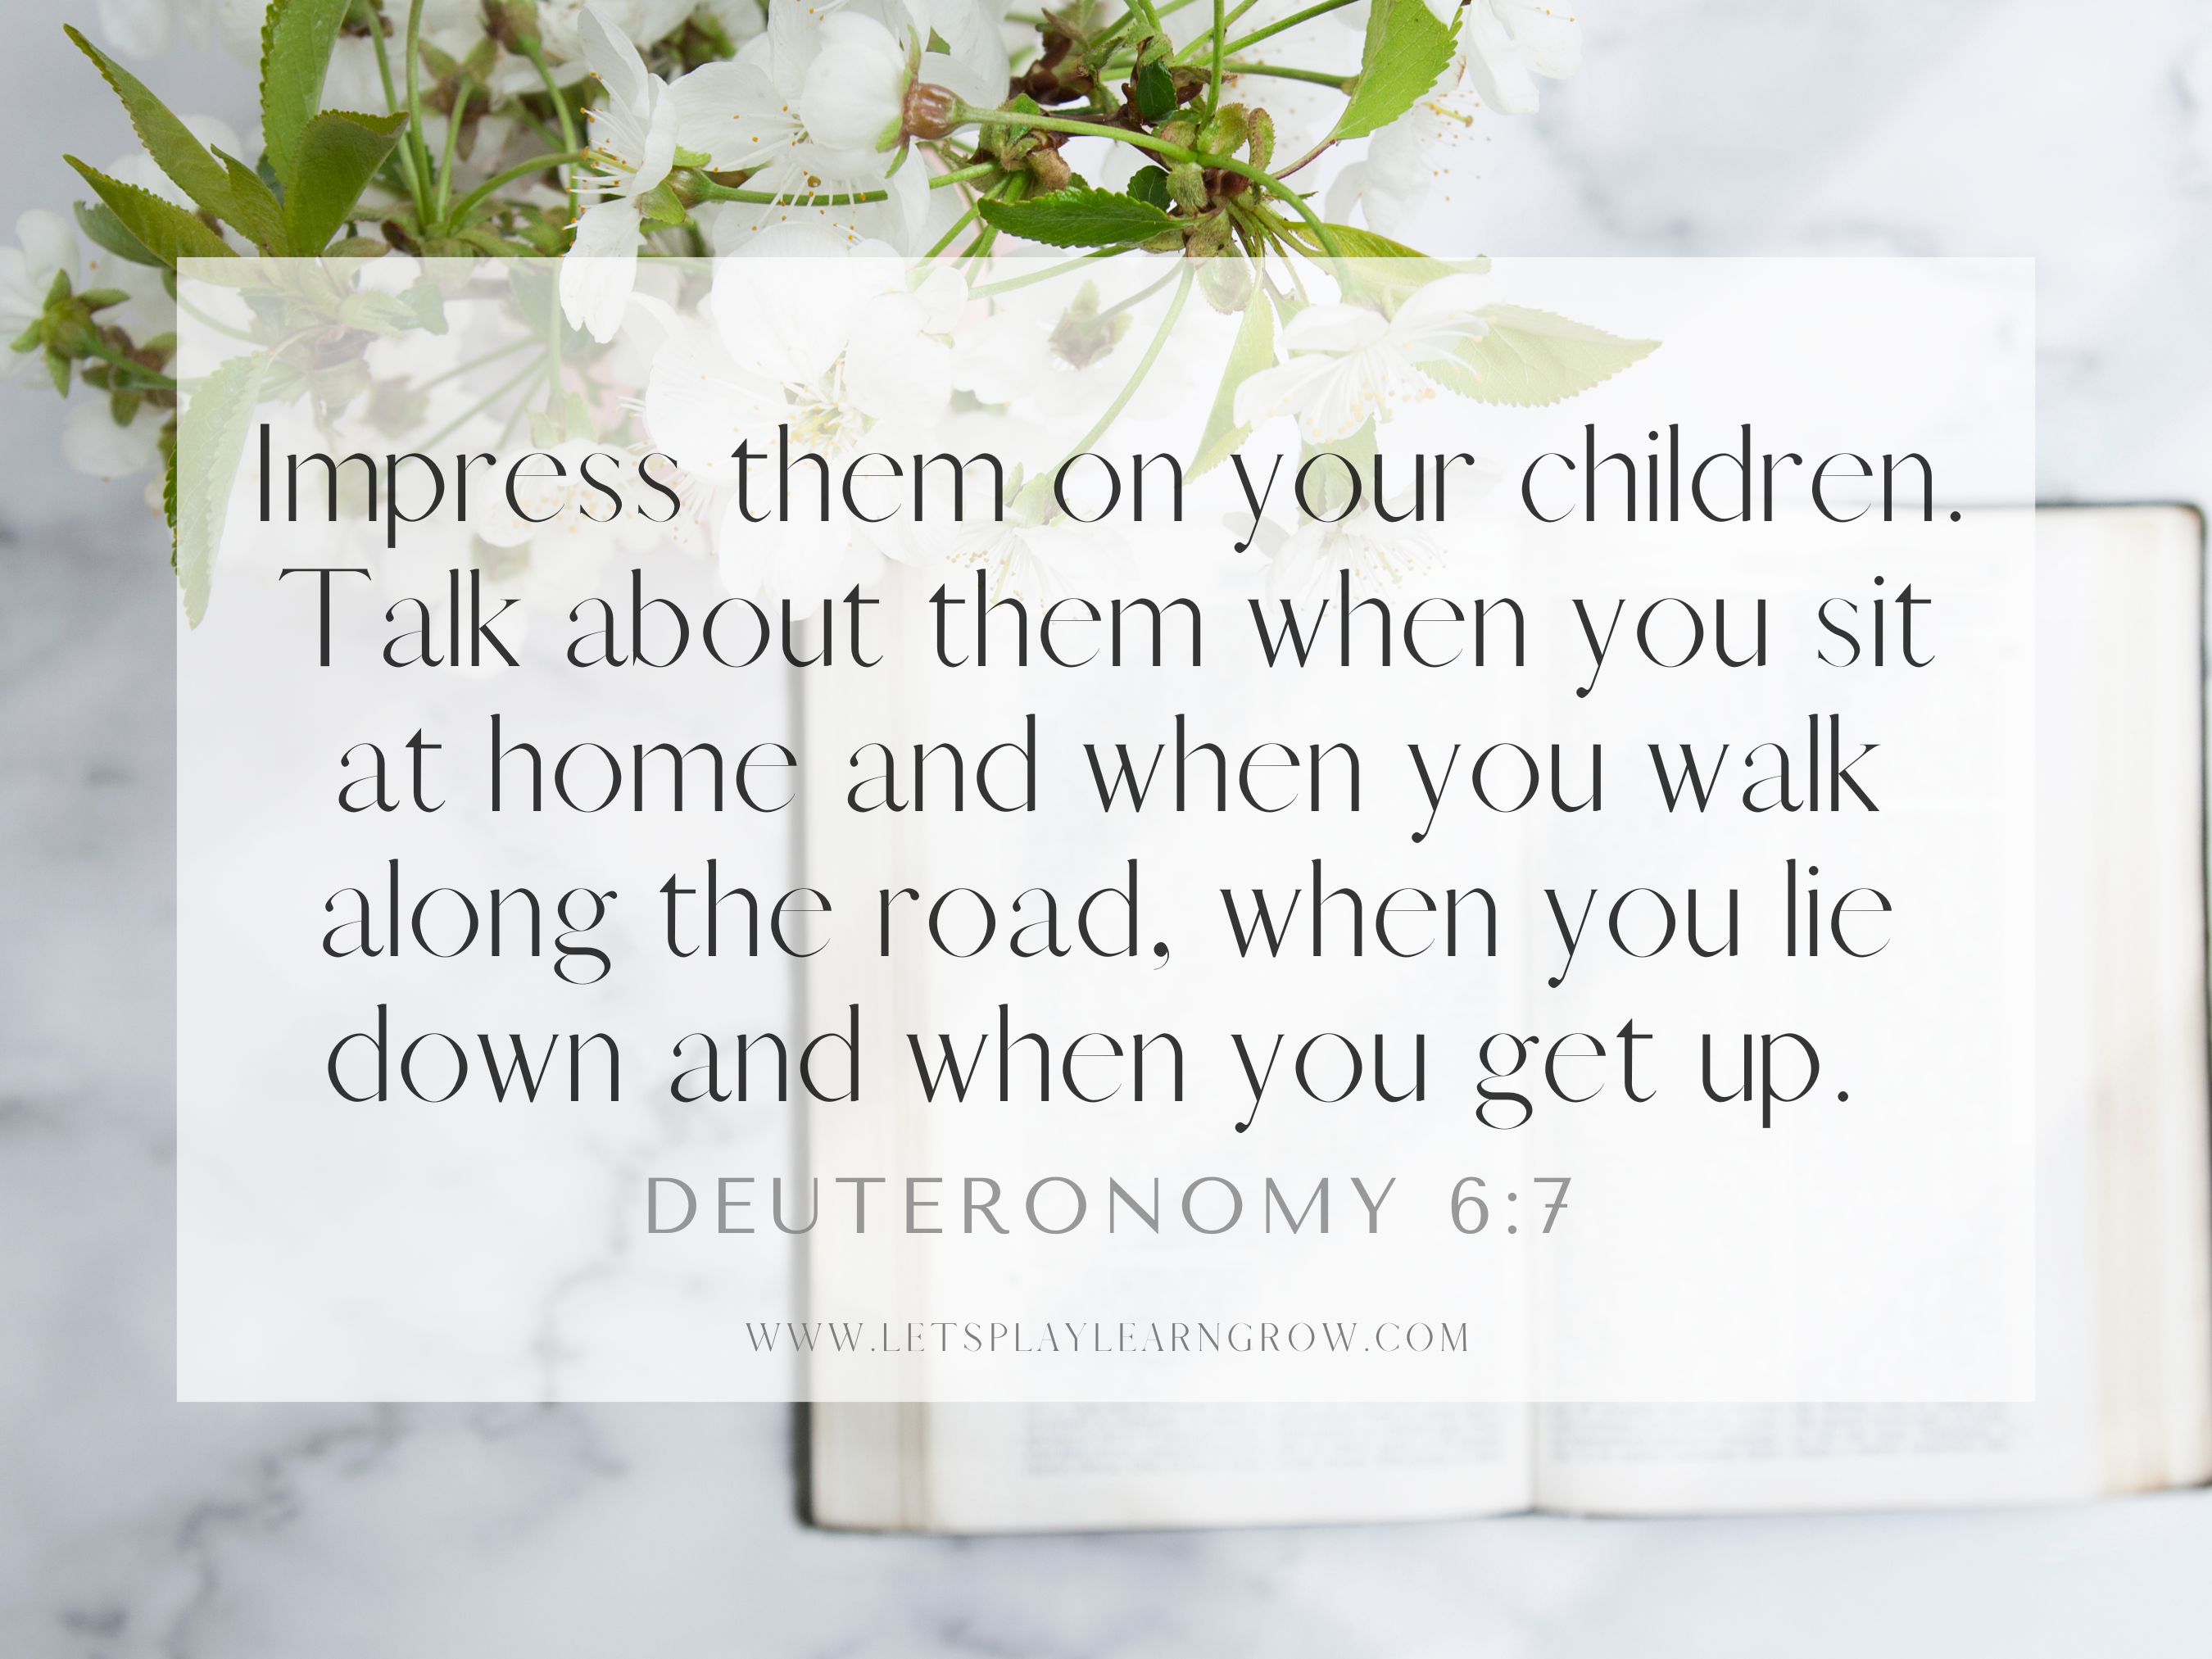 Deuteronomy 6:7